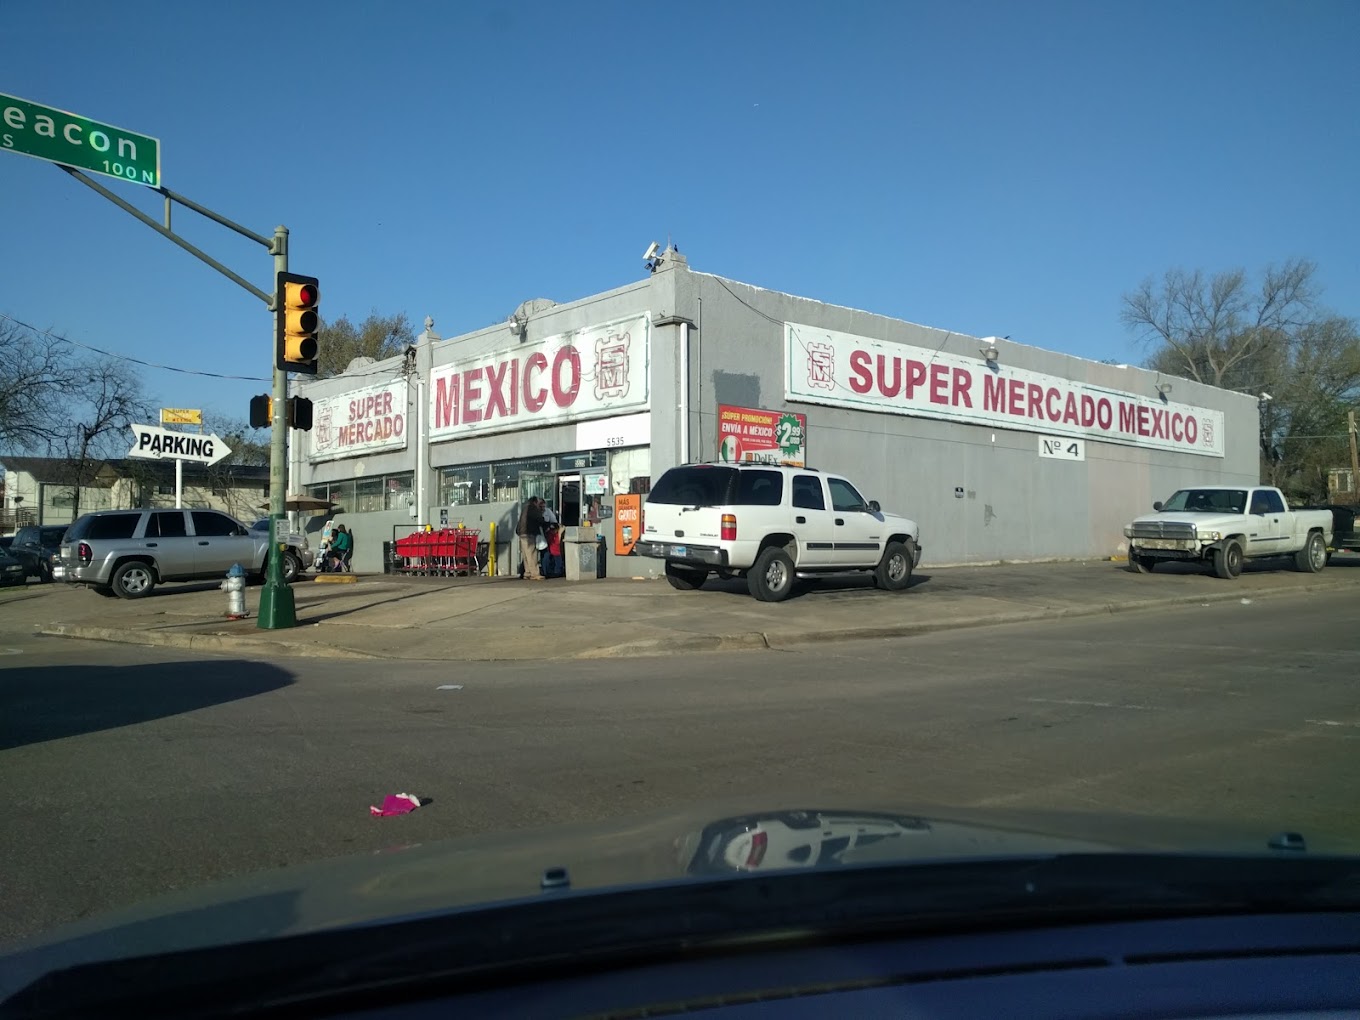 Super Mercado Mexico. A Mexican Grocery Store in Dallas